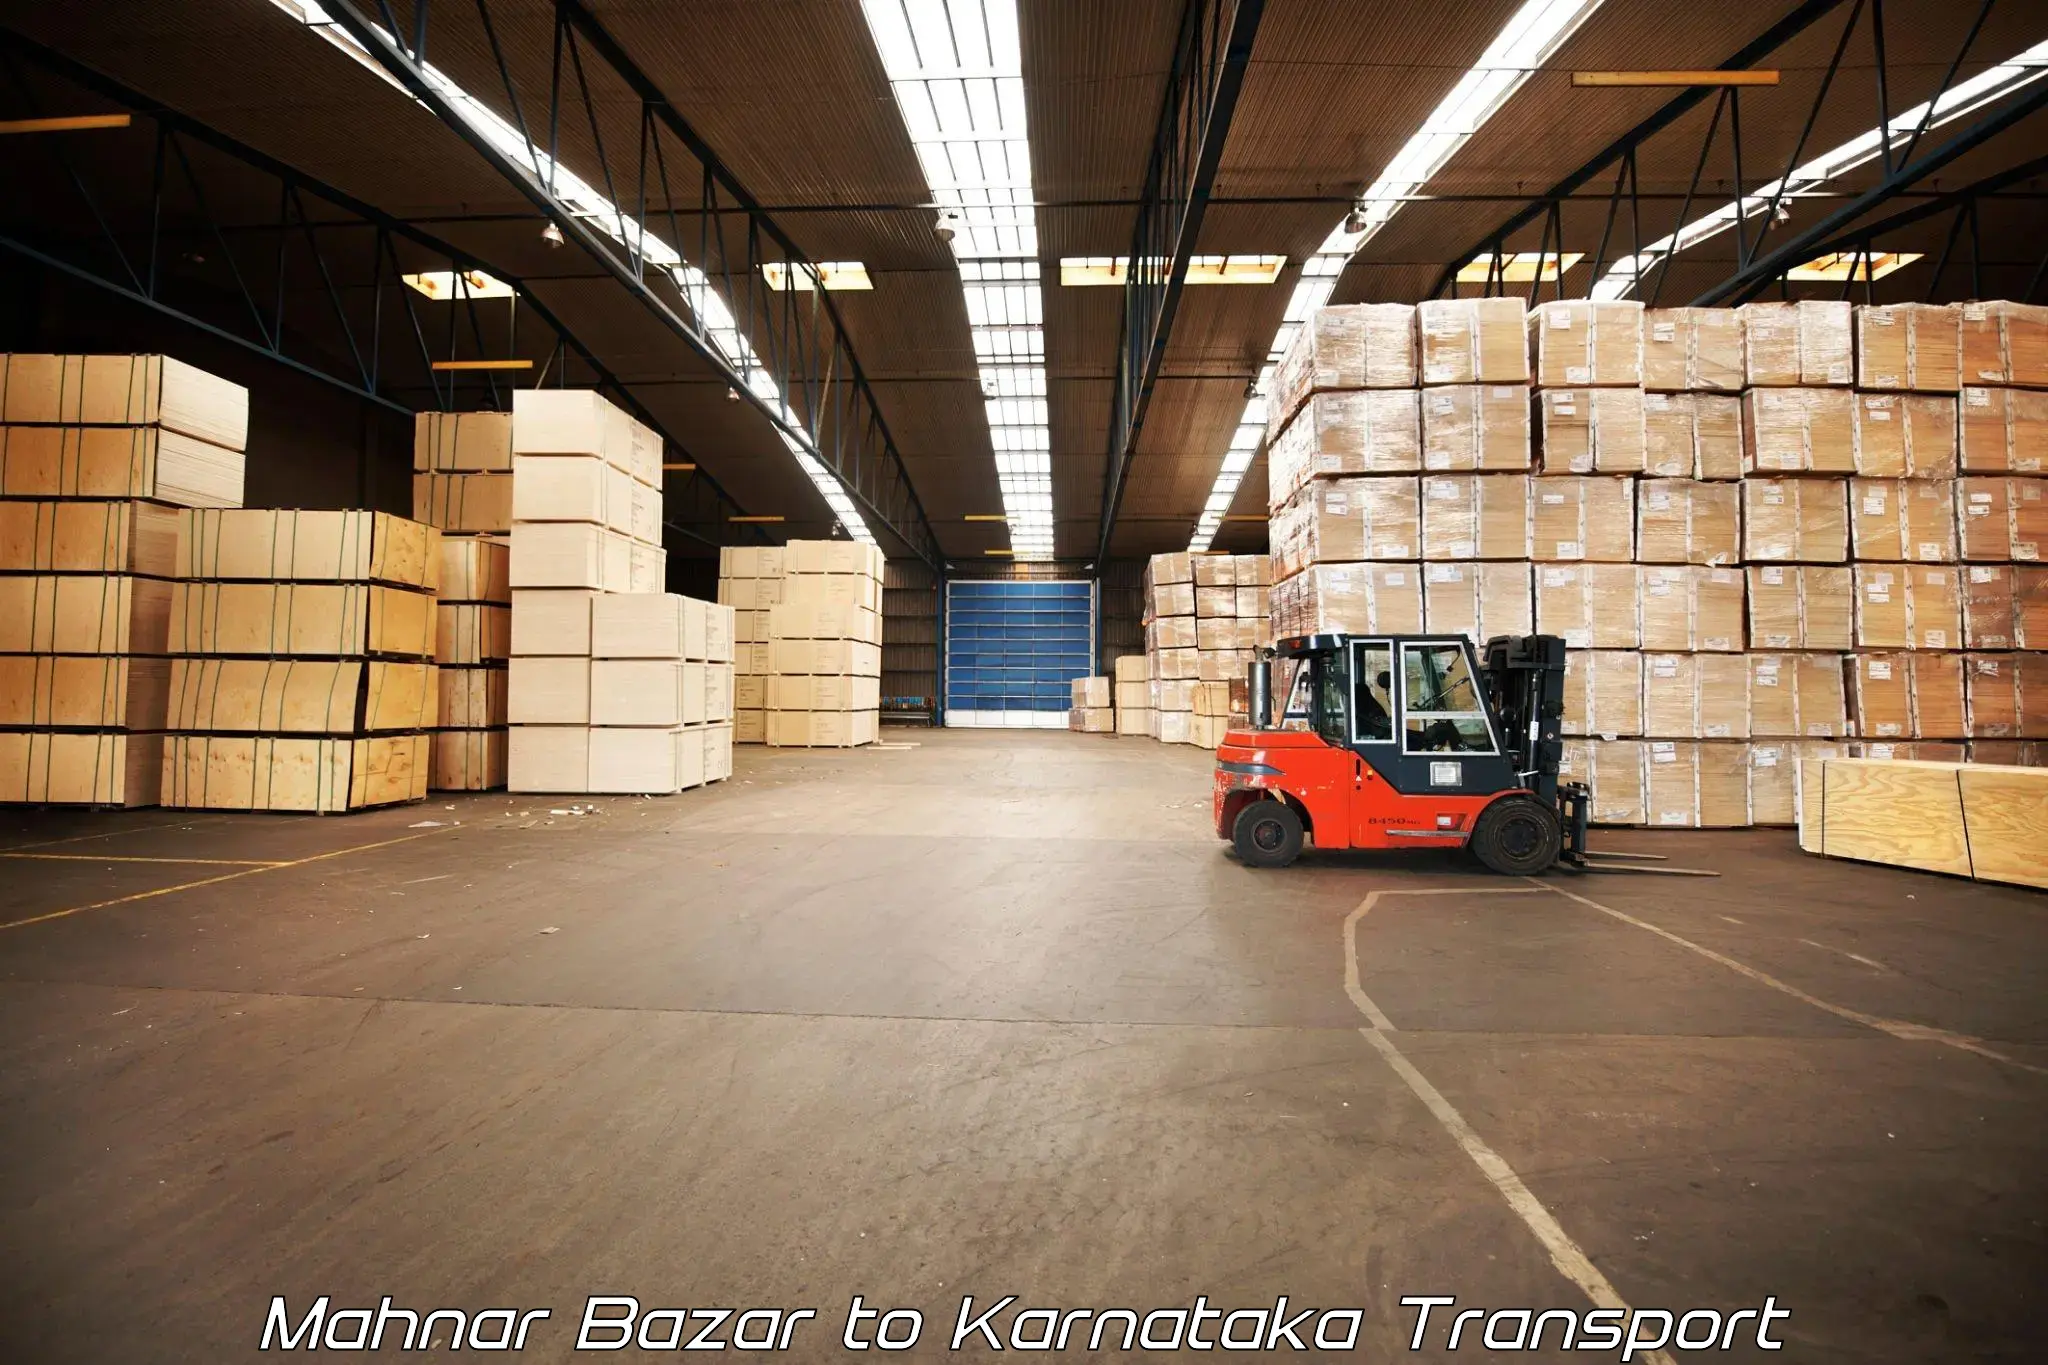 International cargo transportation services Mahnar Bazar to Jagalur